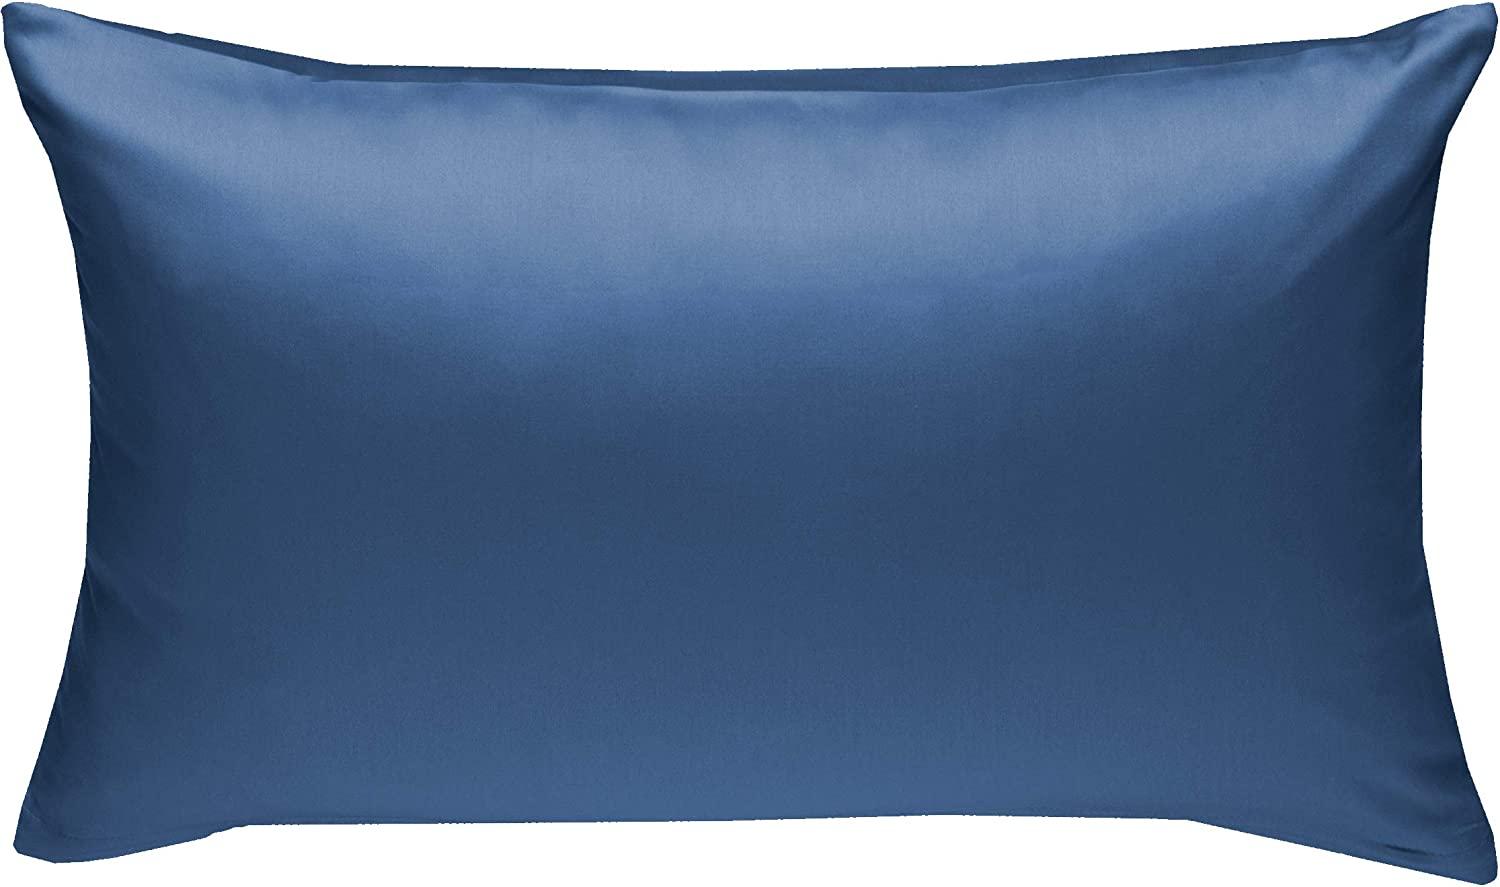 Bettwaesche-mit-Stil Mako-Satin / Baumwollsatin Bettwäsche uni / einfarbig Jeans Blau Kissenbezug 60x80 cm Bild 1